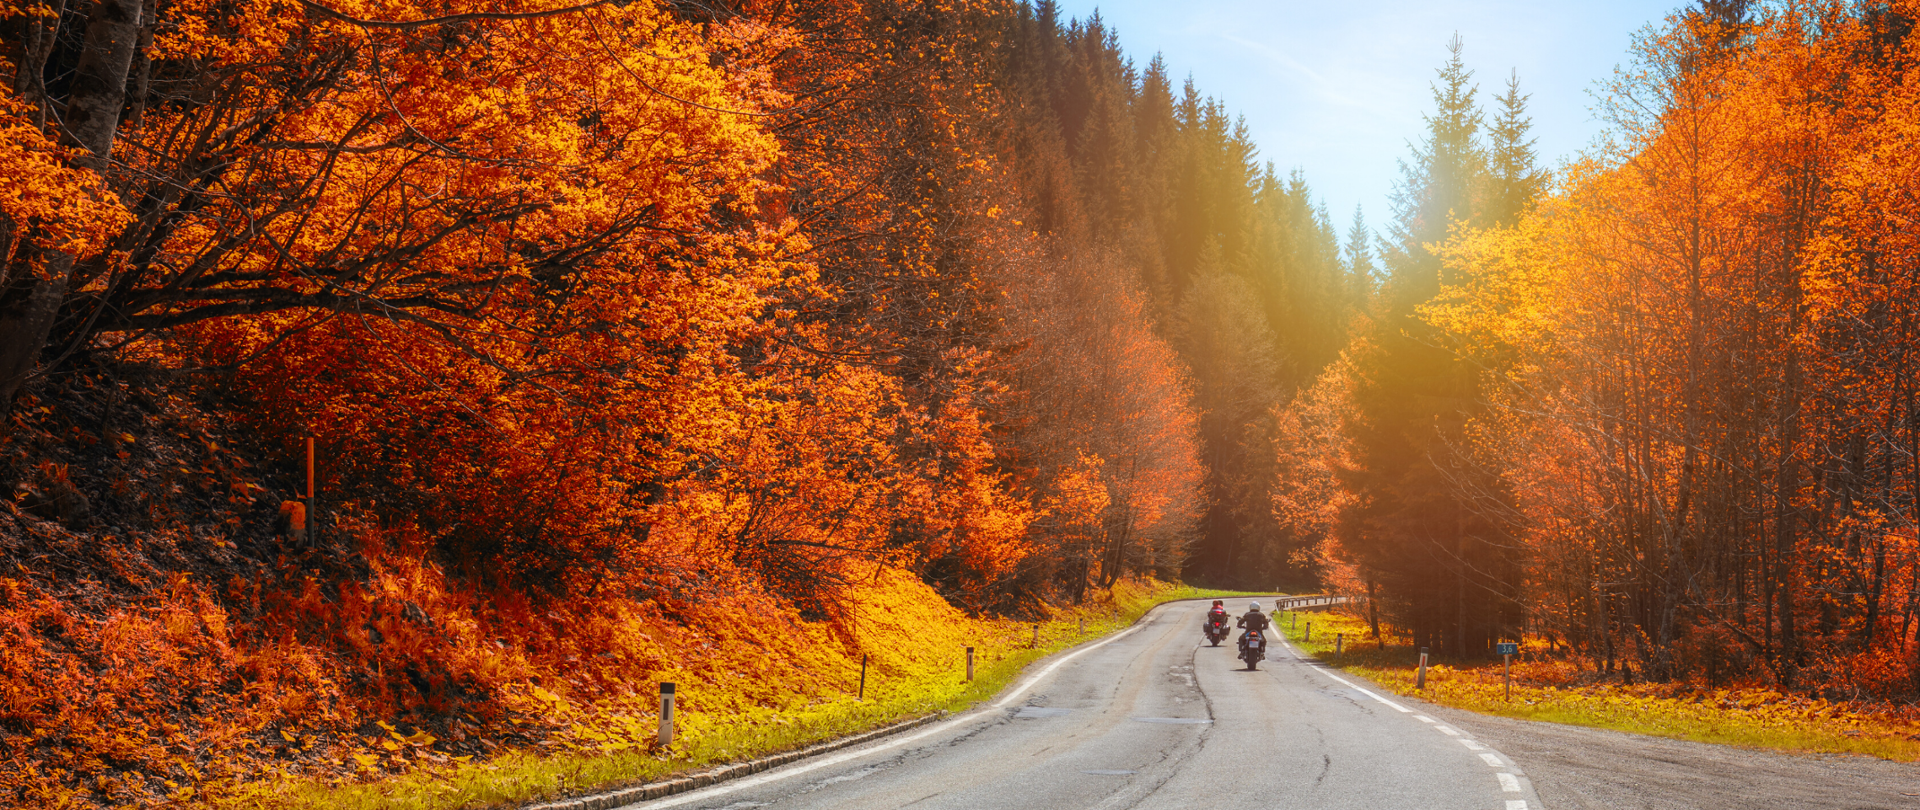 Droga przez las jesienią, a na niej dwaj motocykliści